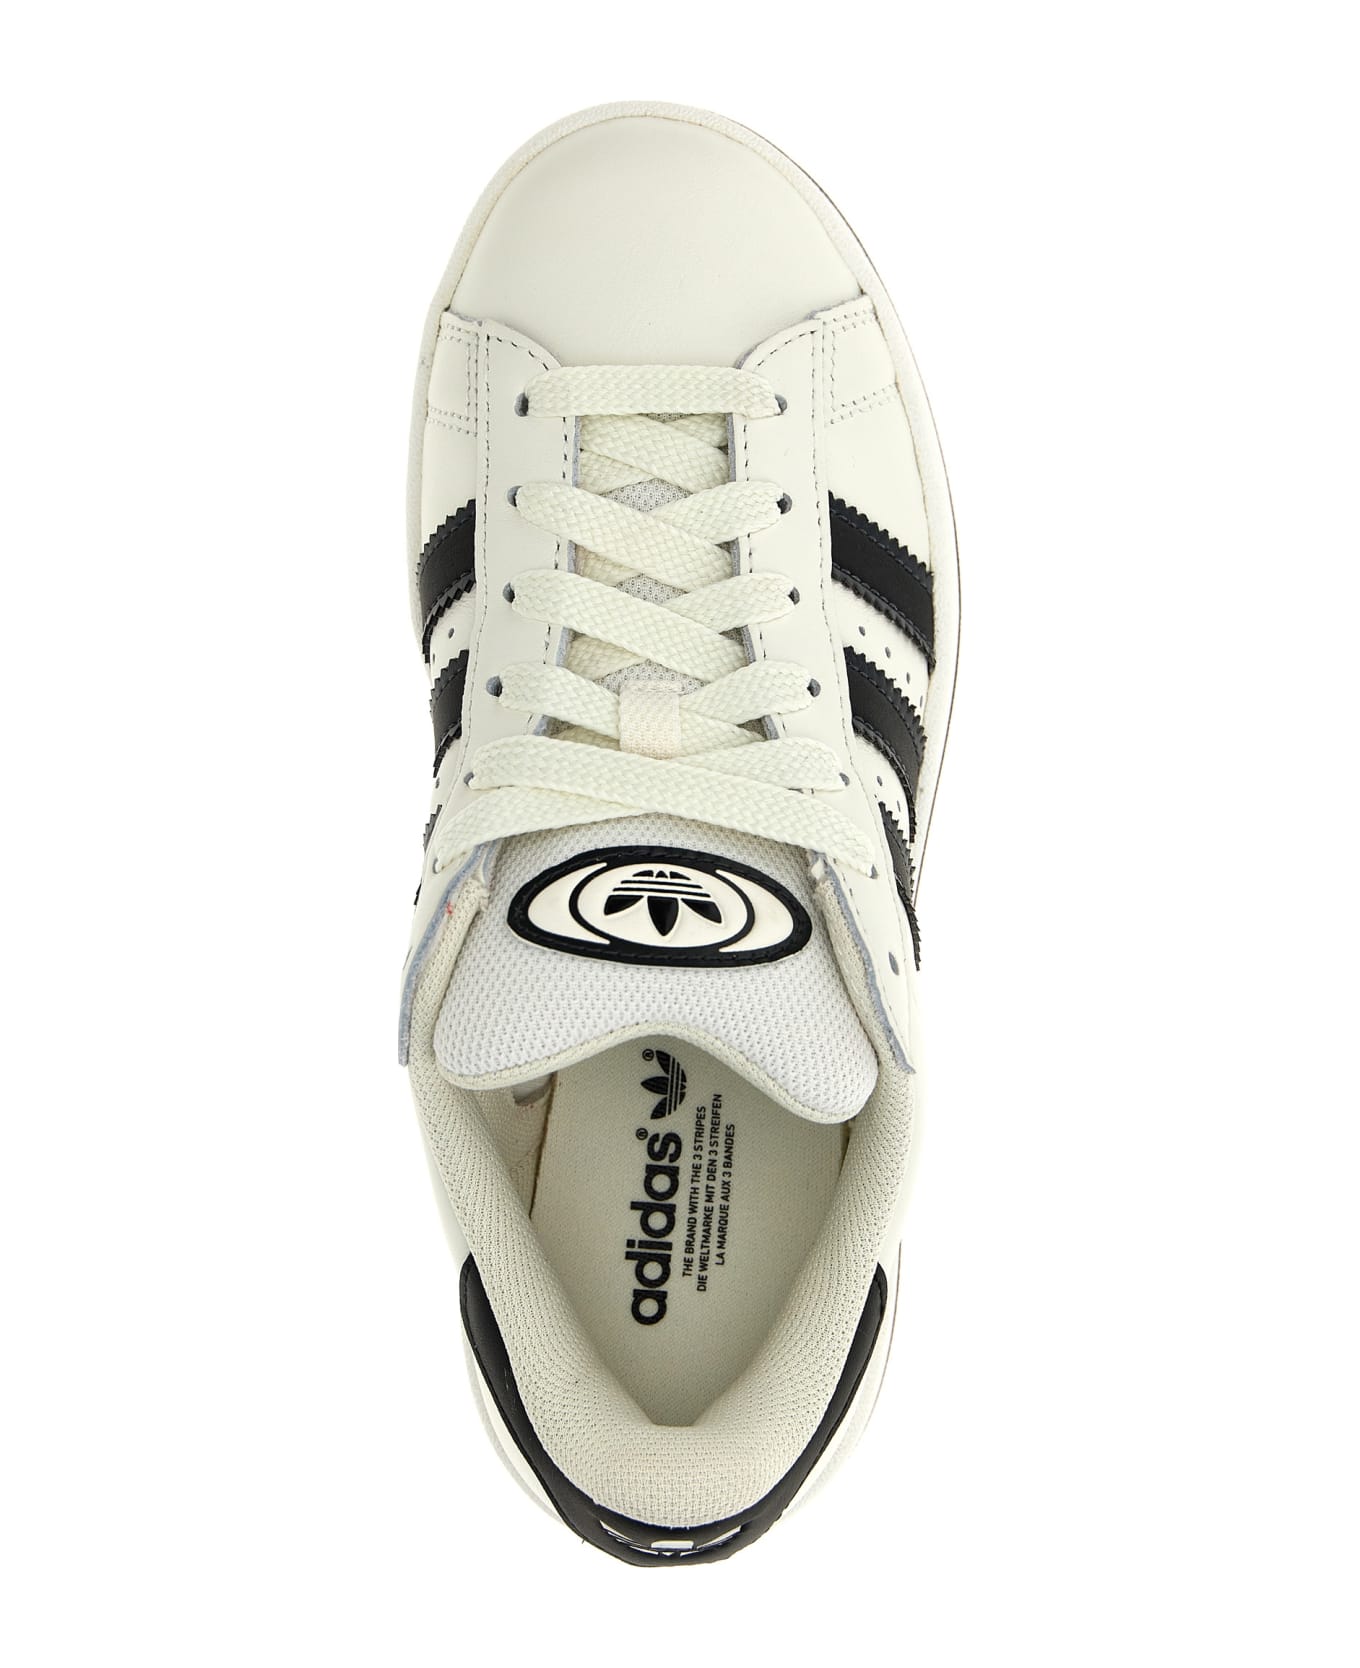 Adidas Originals 'campus 00s' Sneakers - White/Black スニーカー